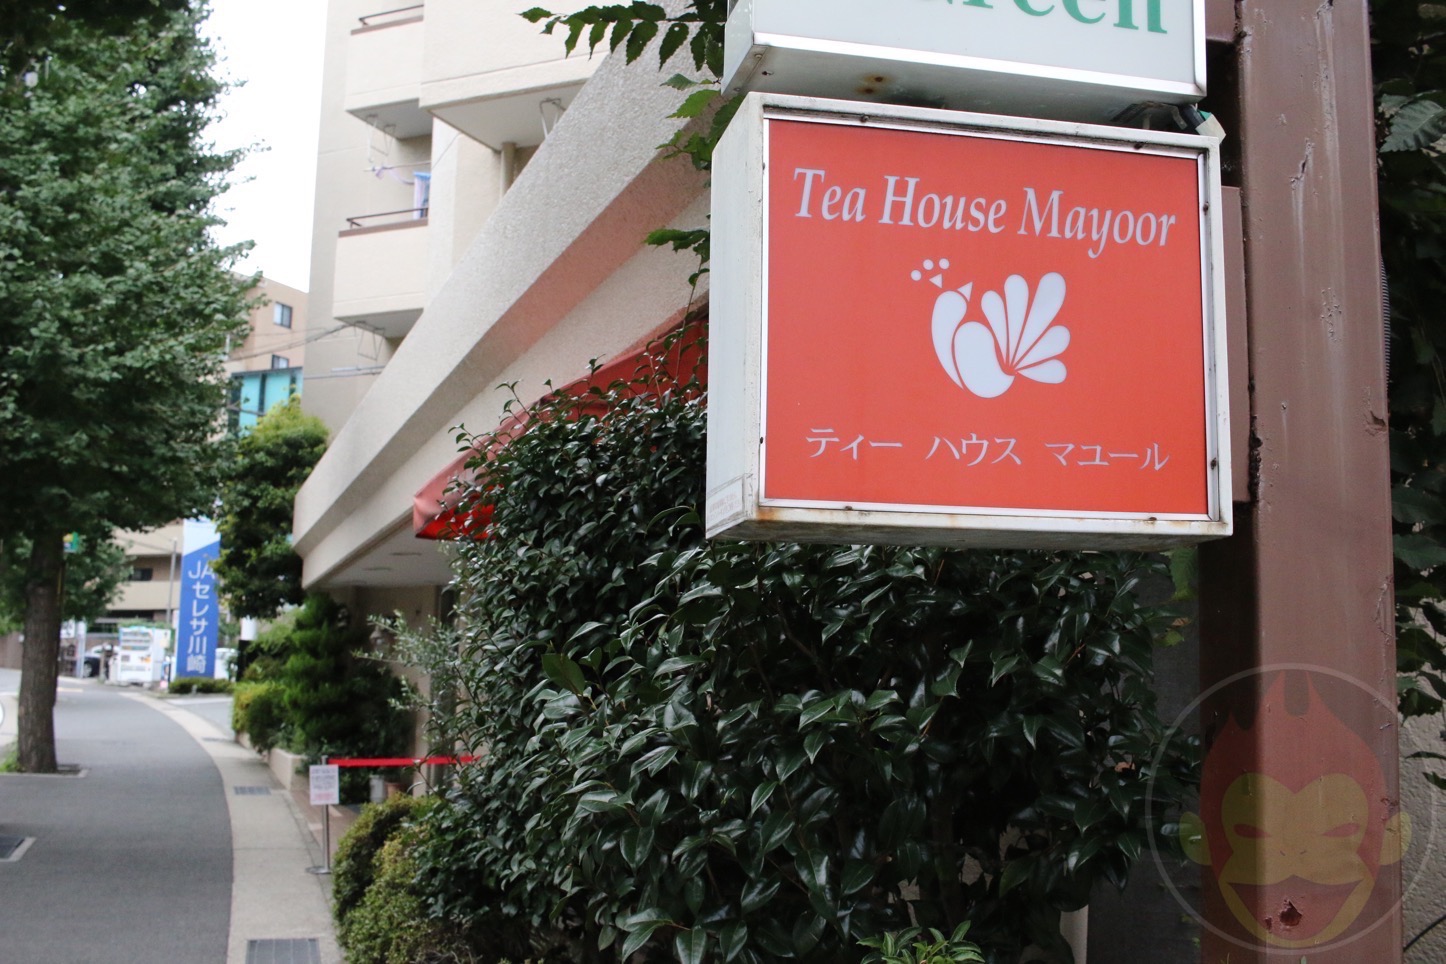 Tea-House-Mayoor-33.jpg